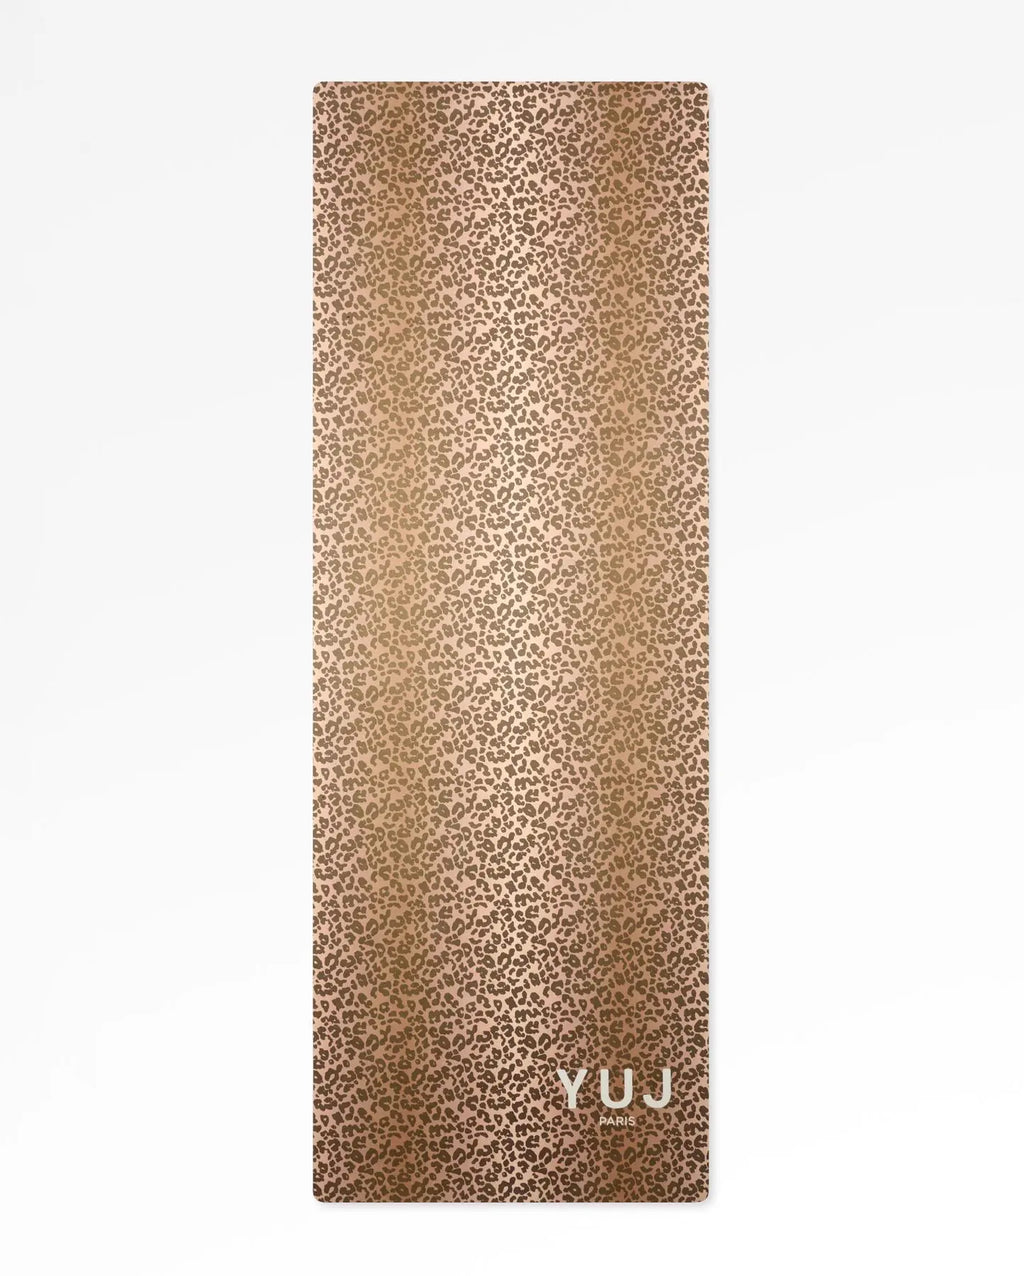 Tapis de yoga LEOWILD 1.55mm YUJ - Maison de pleine conscience